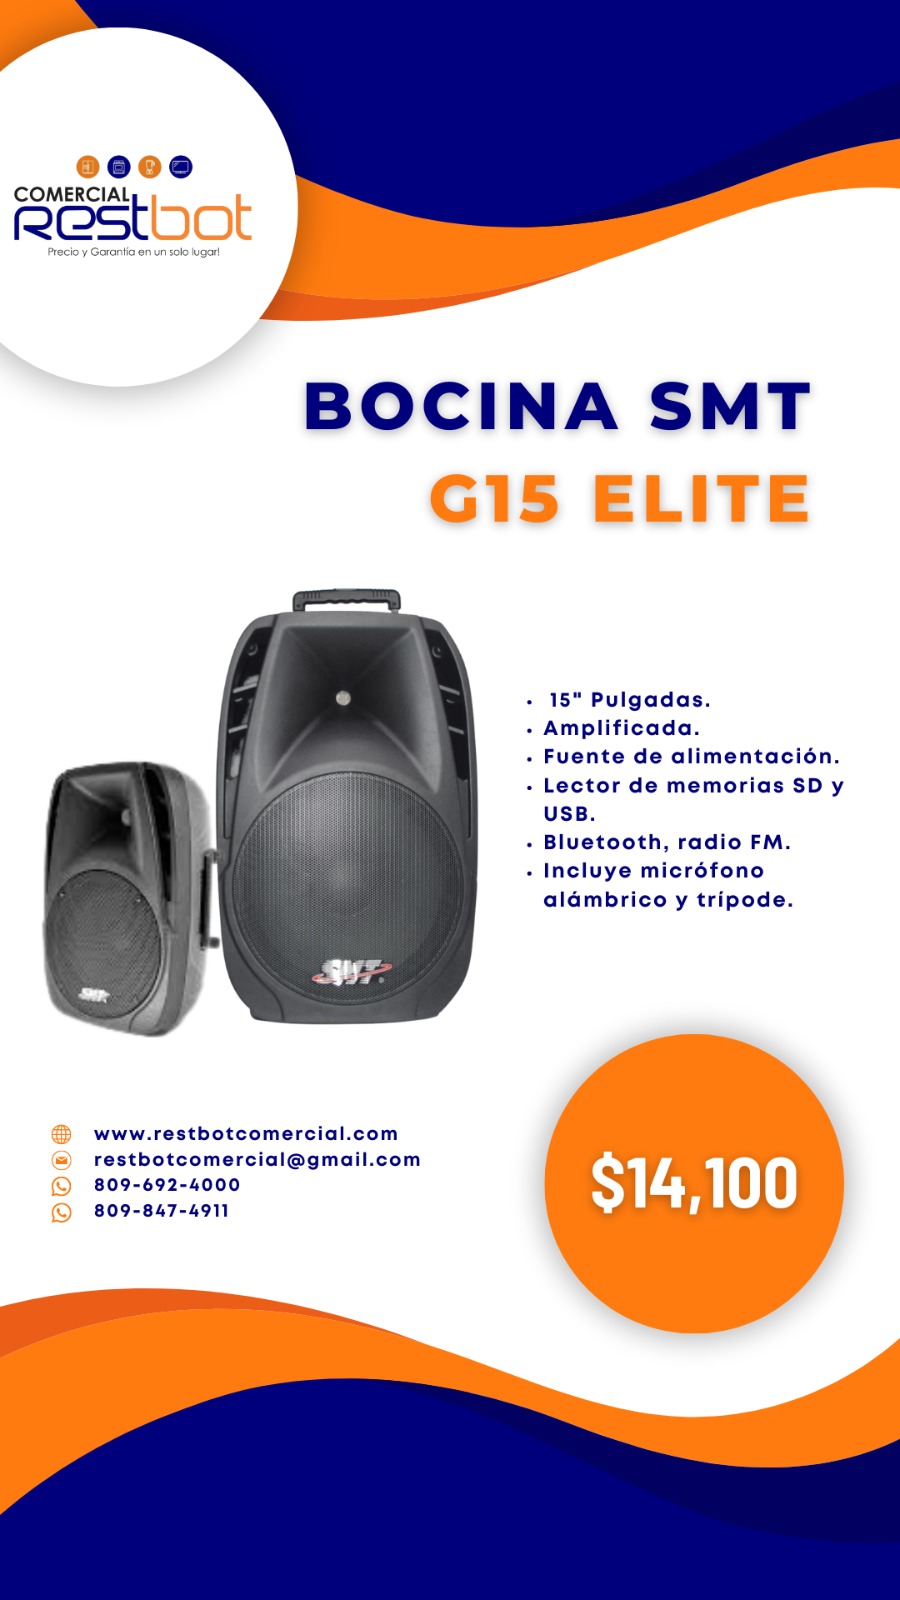 Bocina SMT G15 Elite Foto 7185658-1.jpg